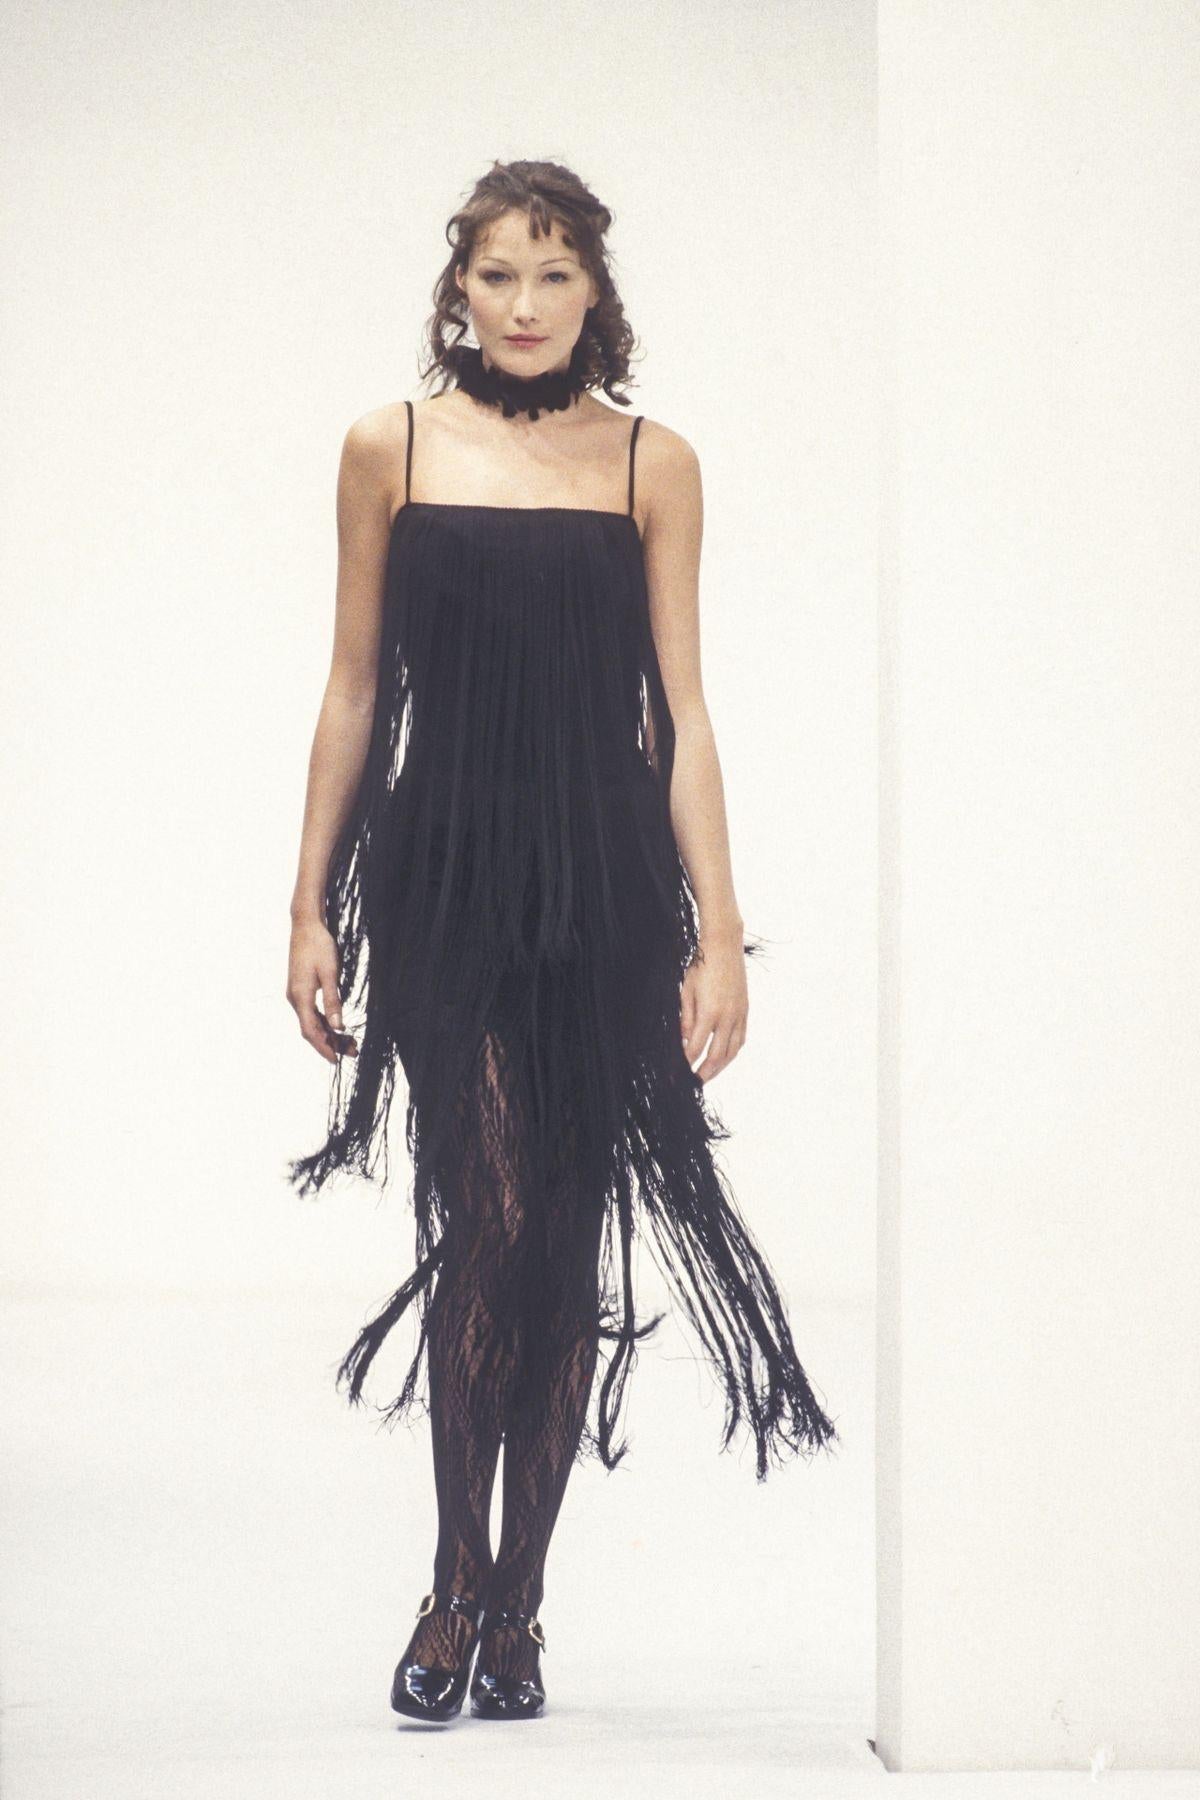 Wir präsentieren ein schickes navyfarbenes Fransenkleid im Flapper-Stil von Dolce & Gabbana. Dieses Minikleid aus der Herbst/Winter-Kollektion 1993 wurde erstmals auf dem Laufsteg an Carla Bruni gezeigt. Ein ähnliches Kleid wurde in der